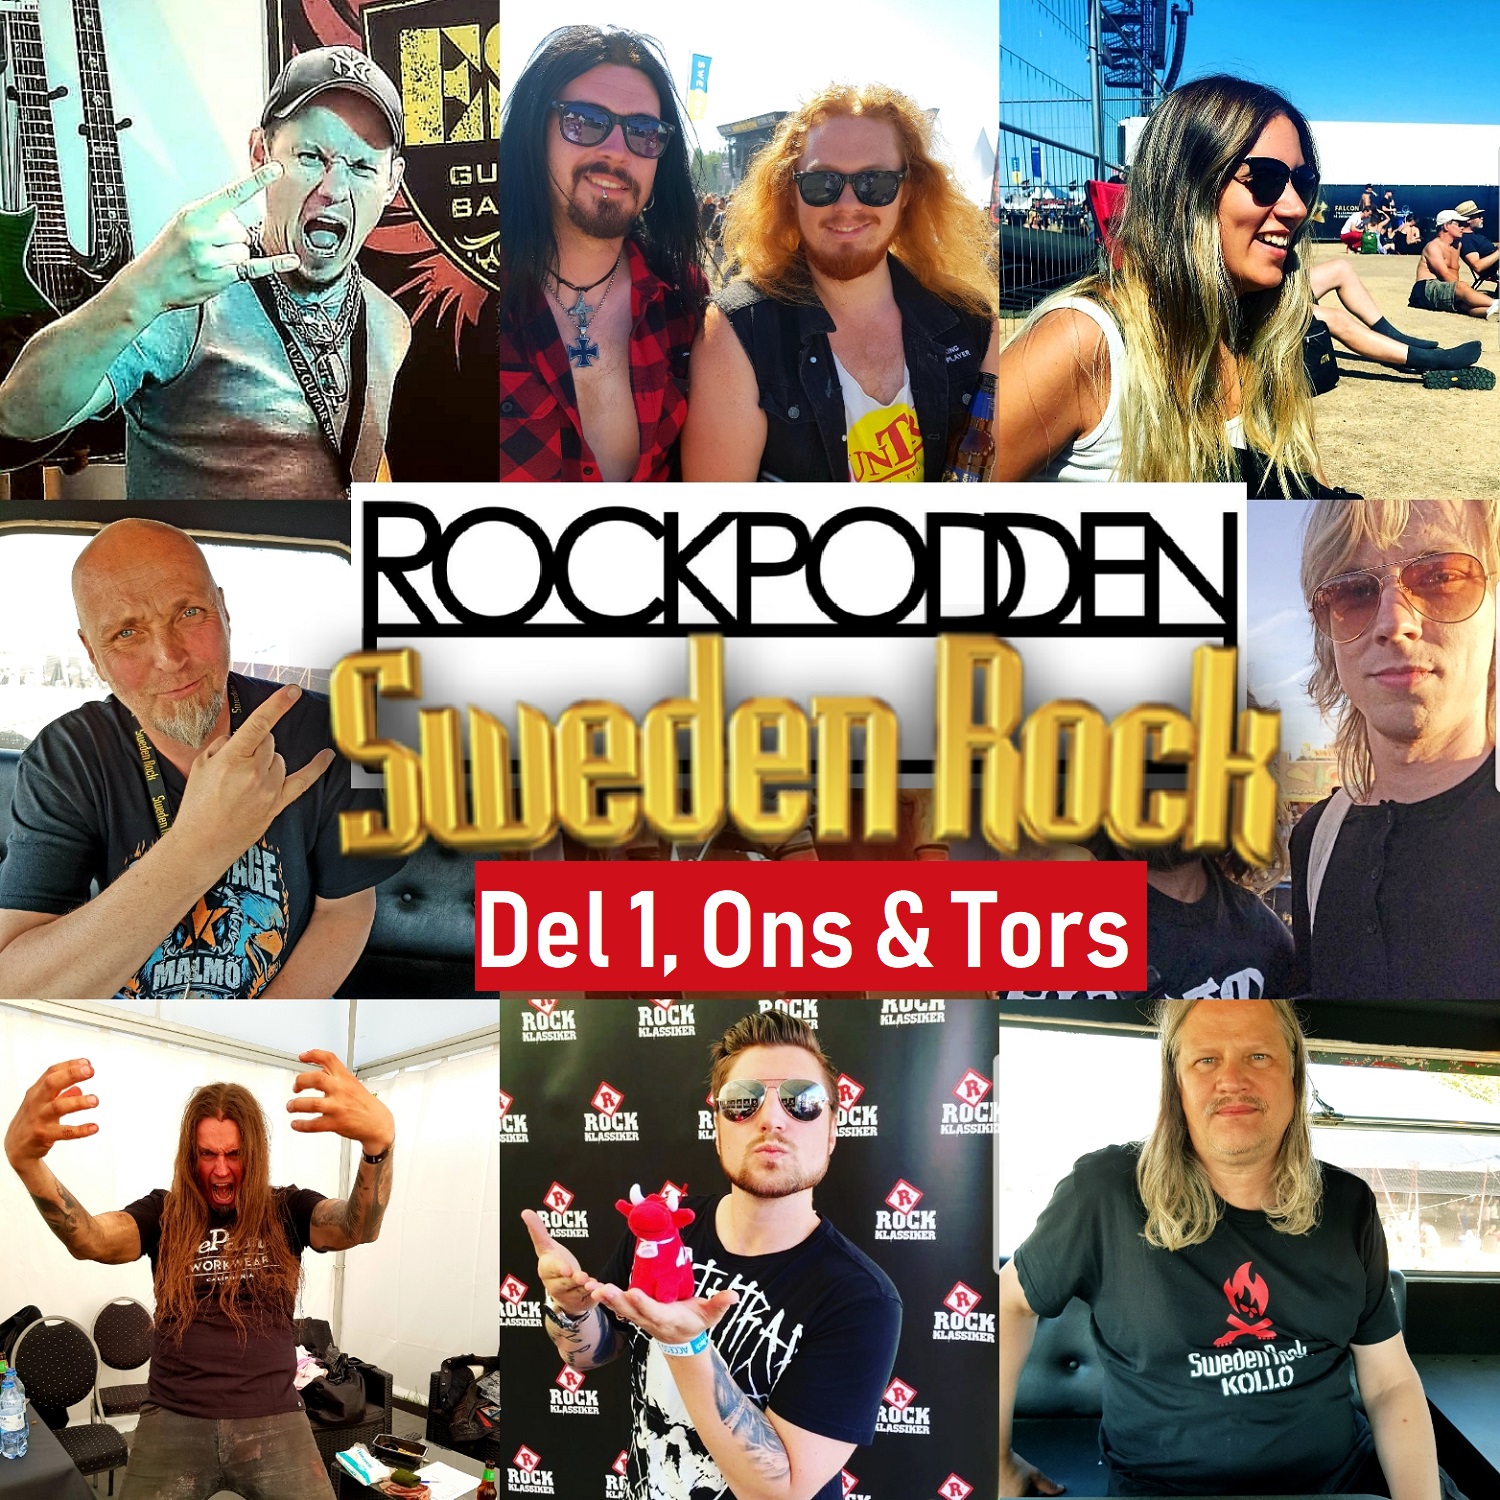 ROCKPODDEN #93 Sweden Rock Special, del 1. Ons-Tors